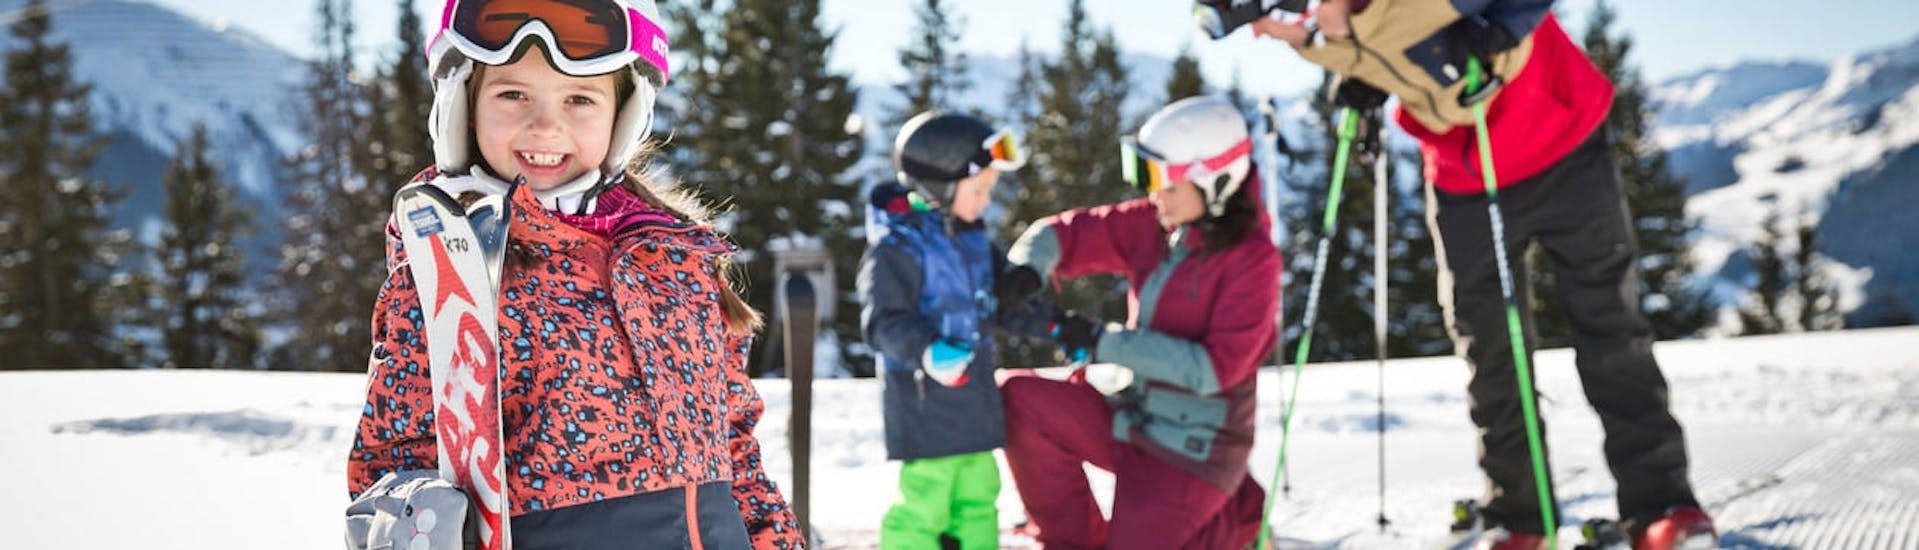 Zwei Eltern helfen ihren Kindern bei der Vorbereitung auf den privaten Kinder-Skikurs aller Altersgruppen in der Snowacademy Saalbach.